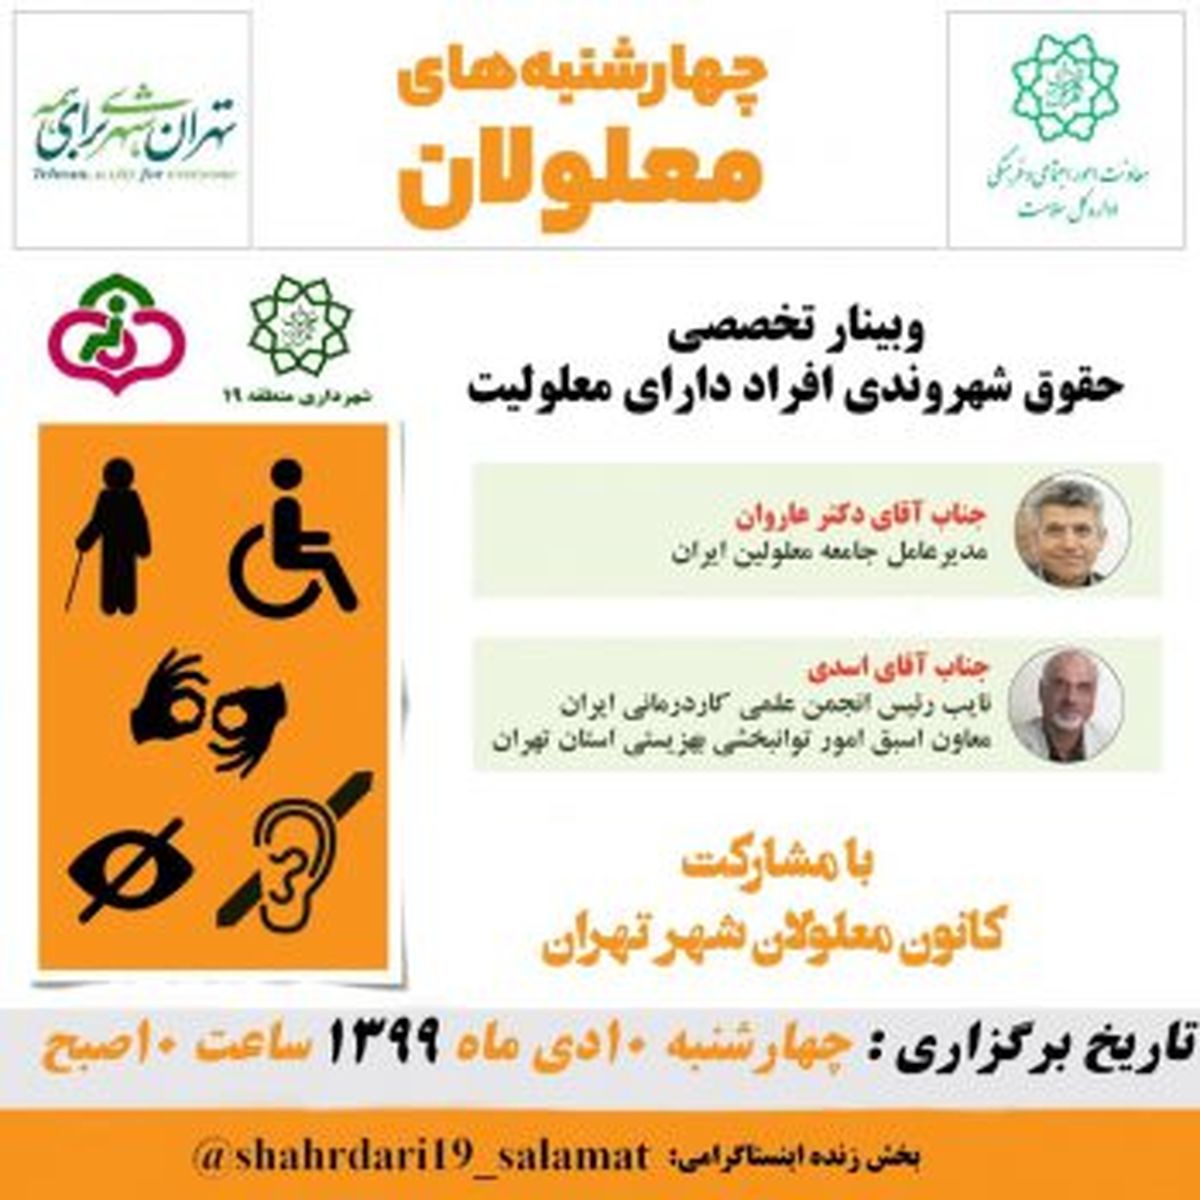 تدارک وبینار و پیام های آموزشی چهارشنبه های معلولان در منطقه ۱۹